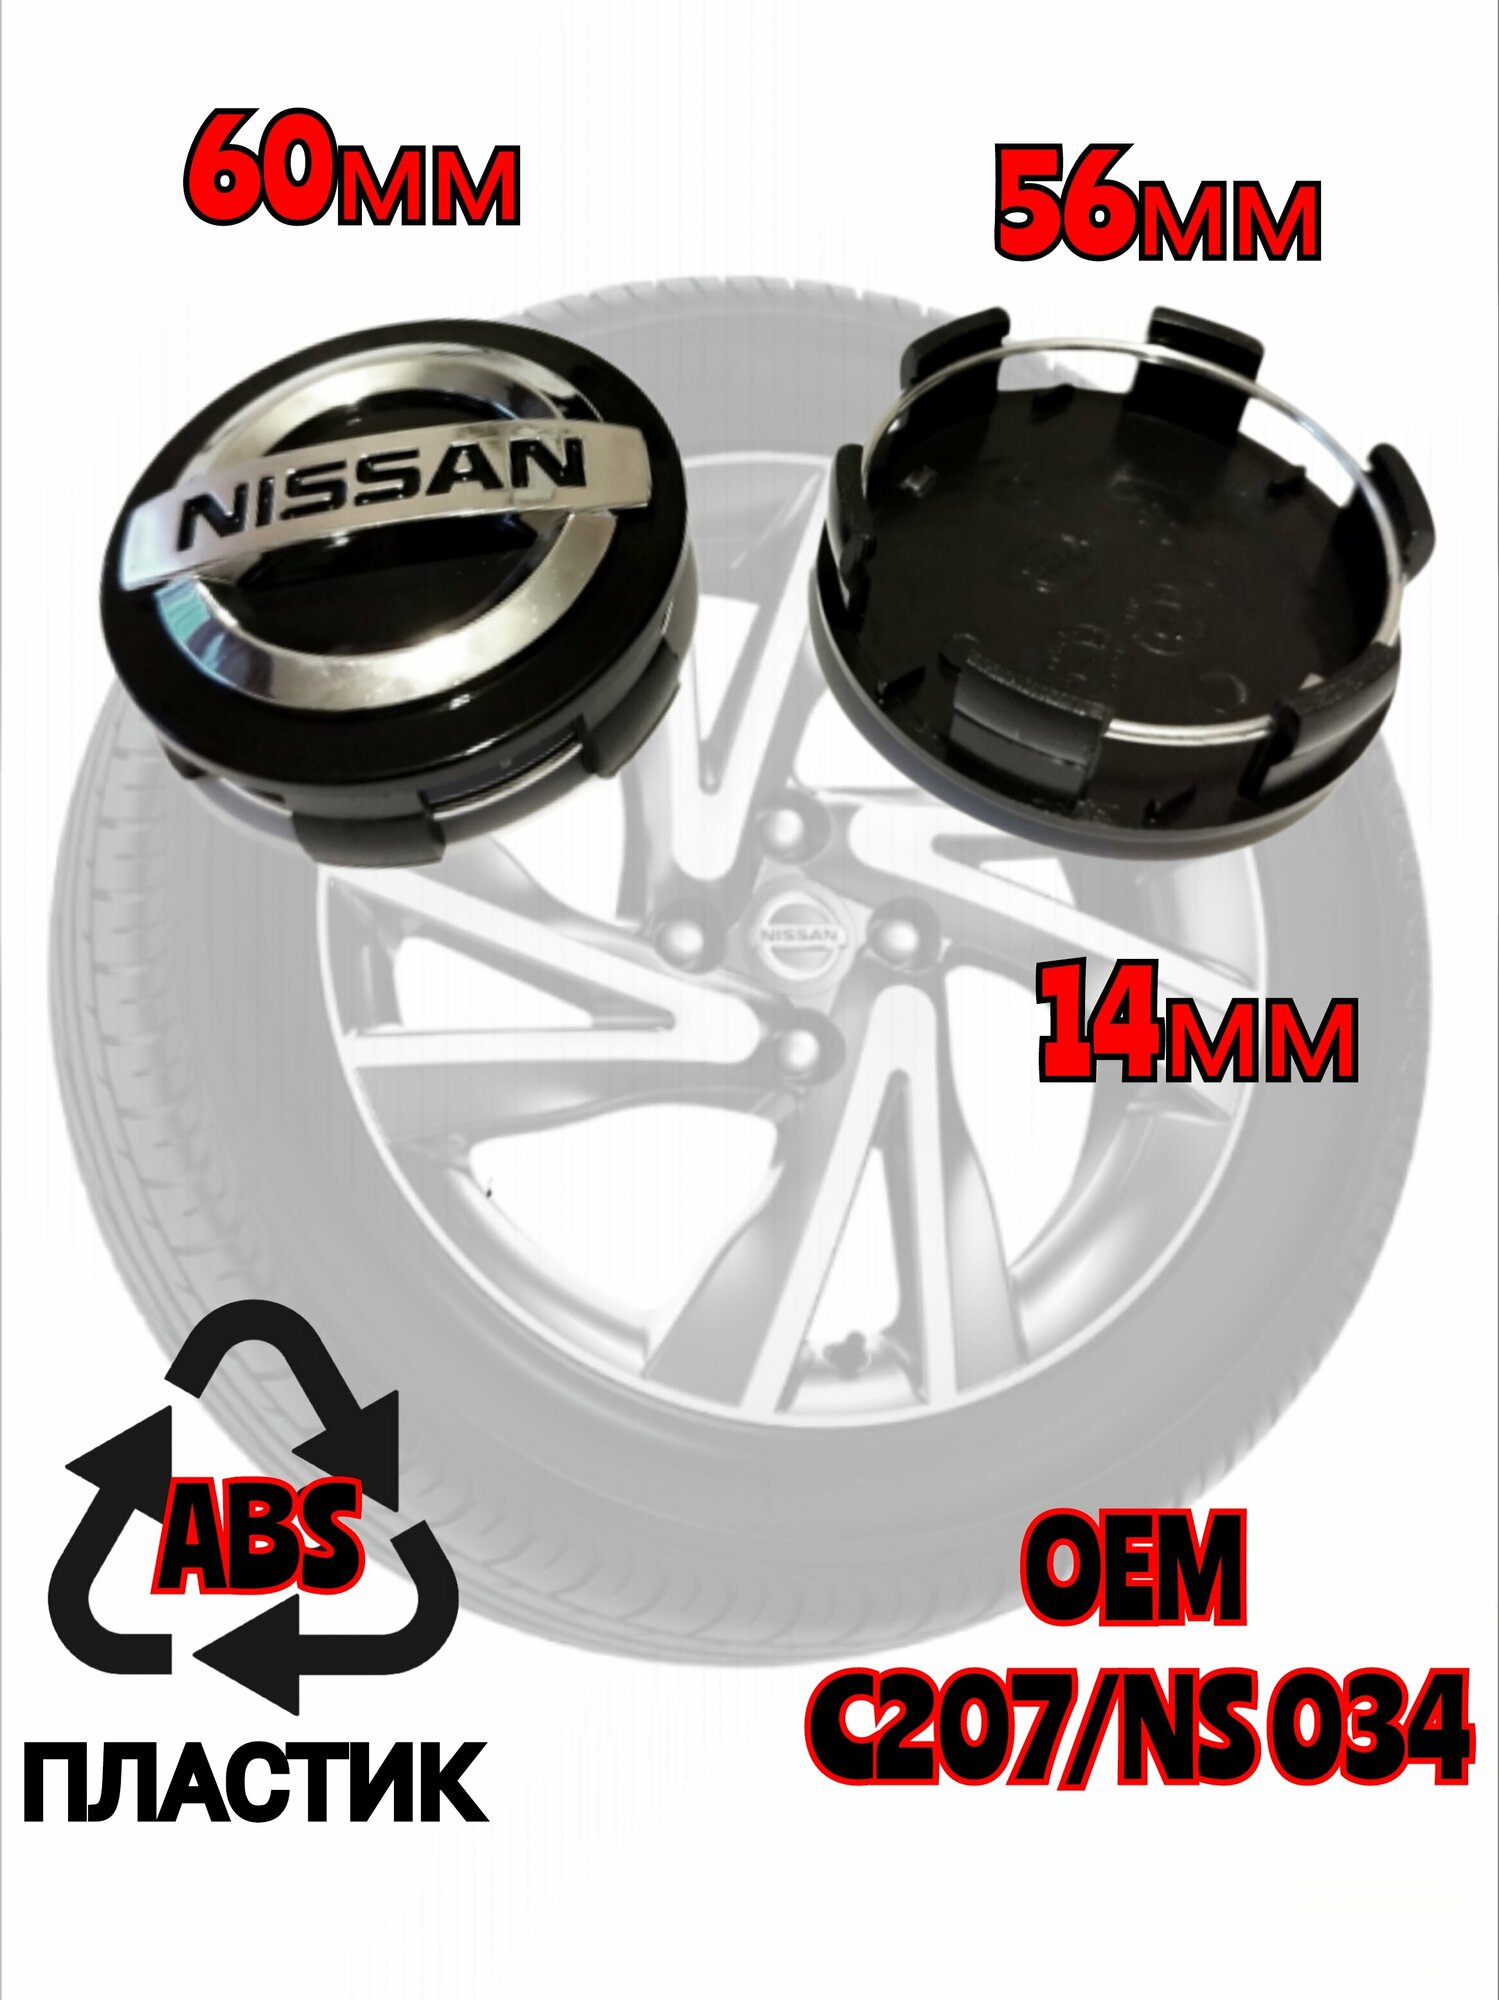 Заглушка диска/Колпачок ступицы литого диска Nissan Ниссан 60 -56 -14 мм цвет черный 4 штуки